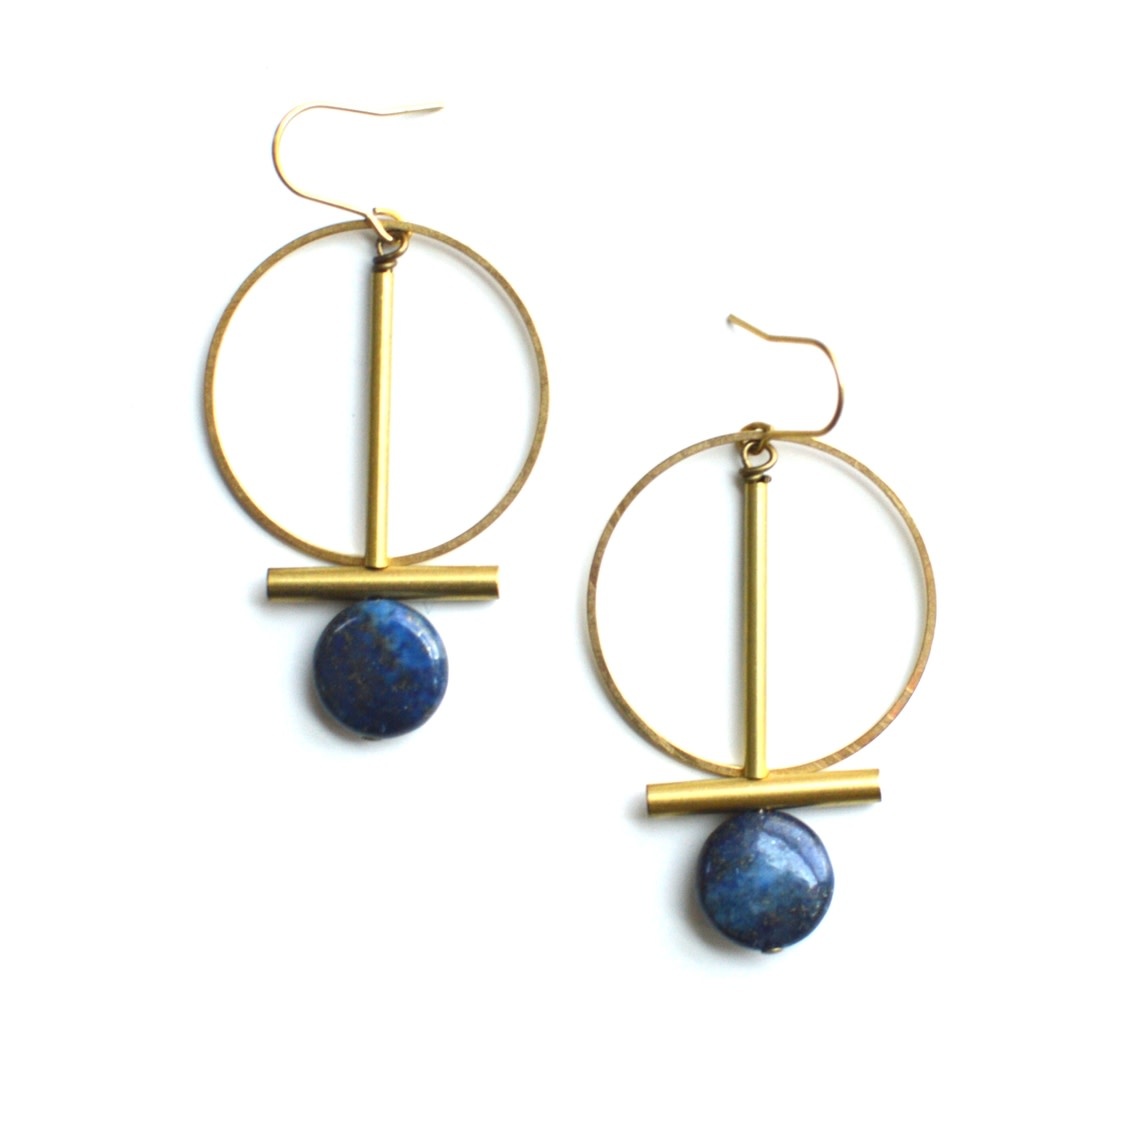 Ker-ij Jewelry Lapis Lazuli Shelton Earrings